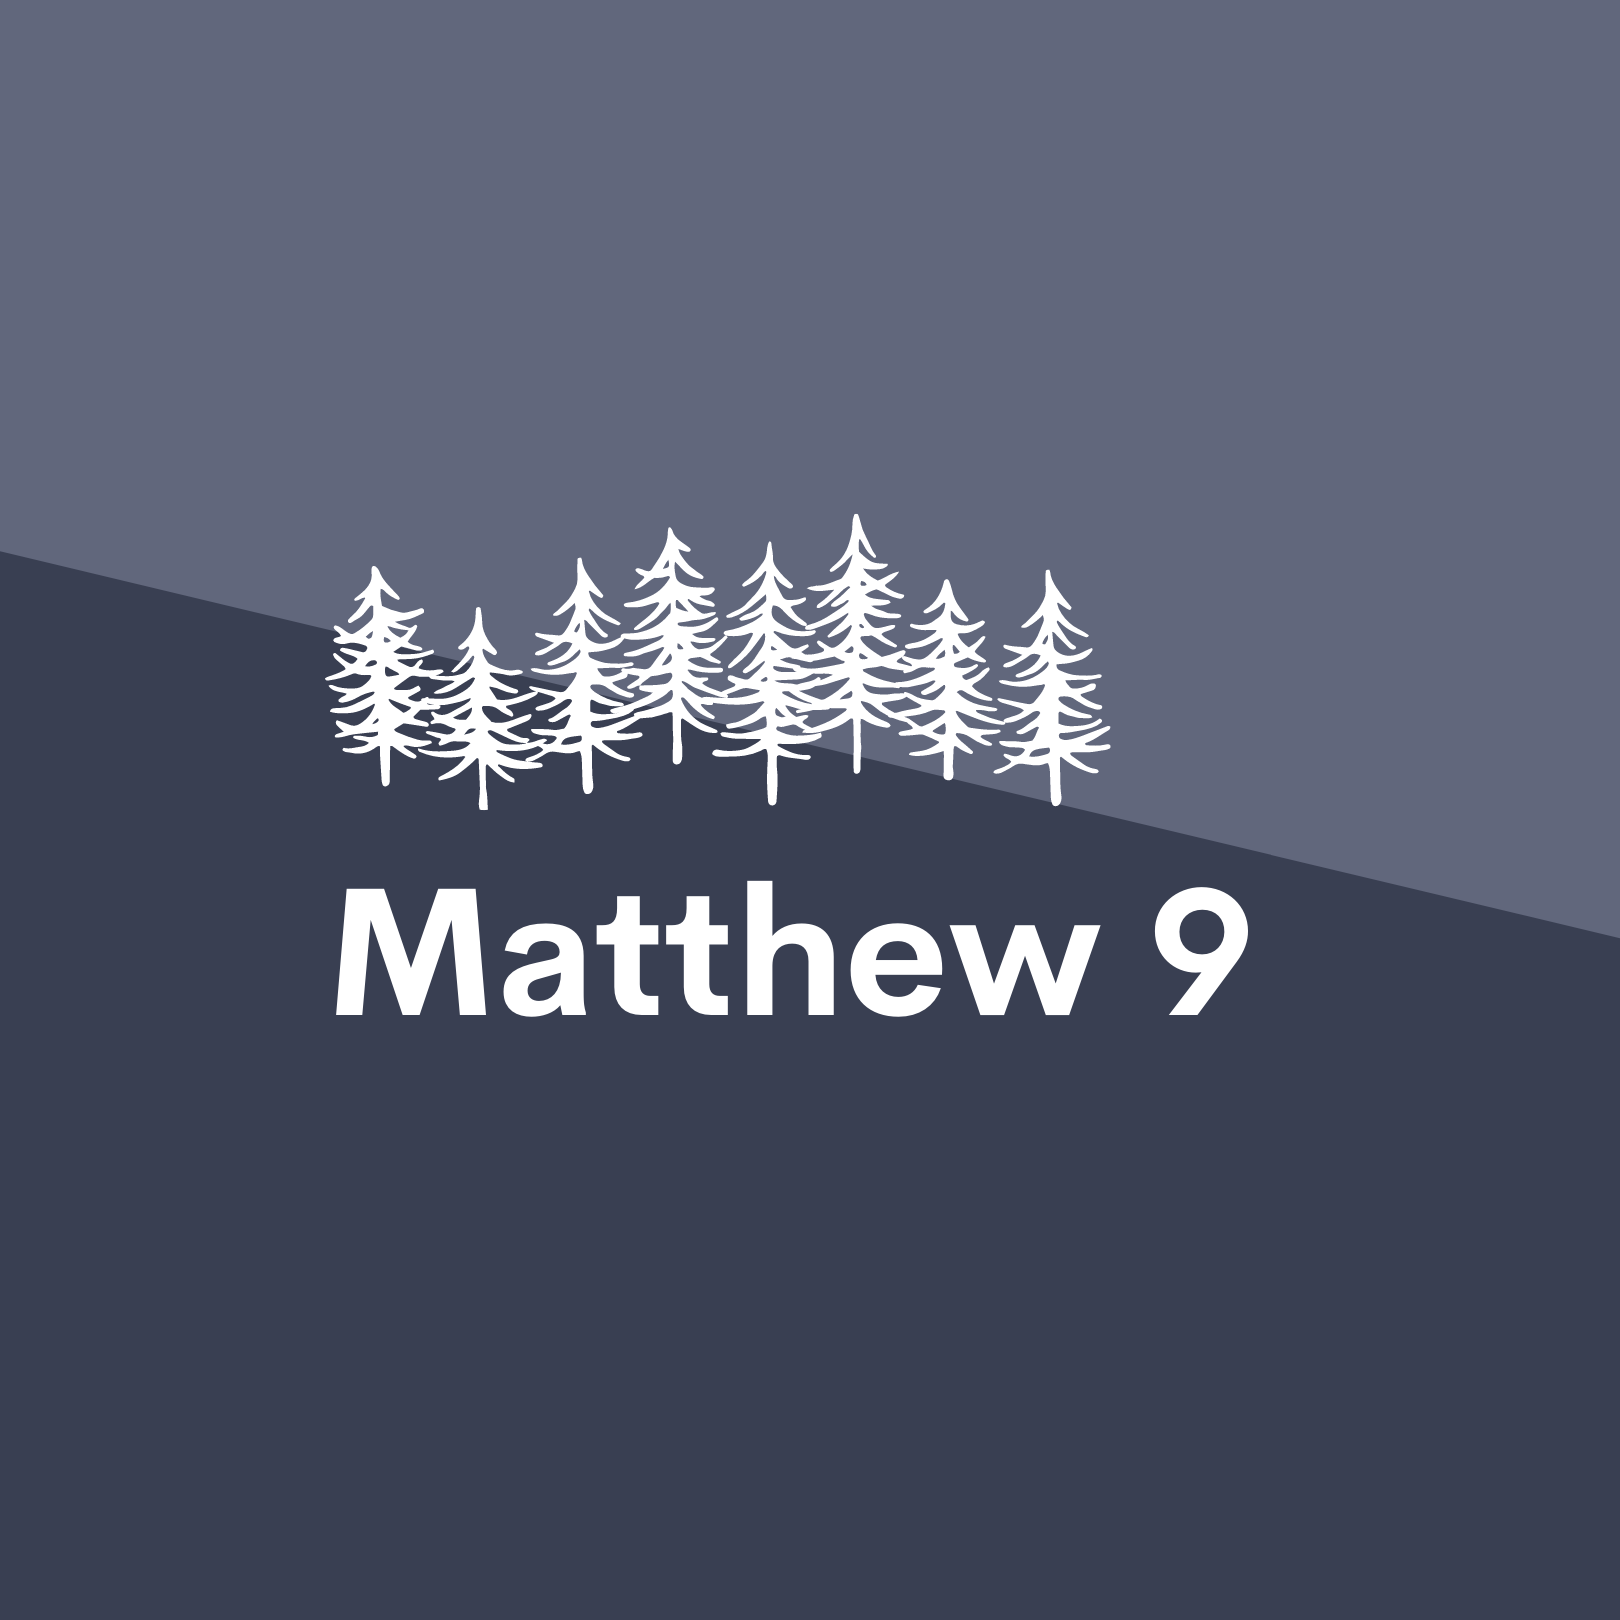 Jan 14: Matthew 9